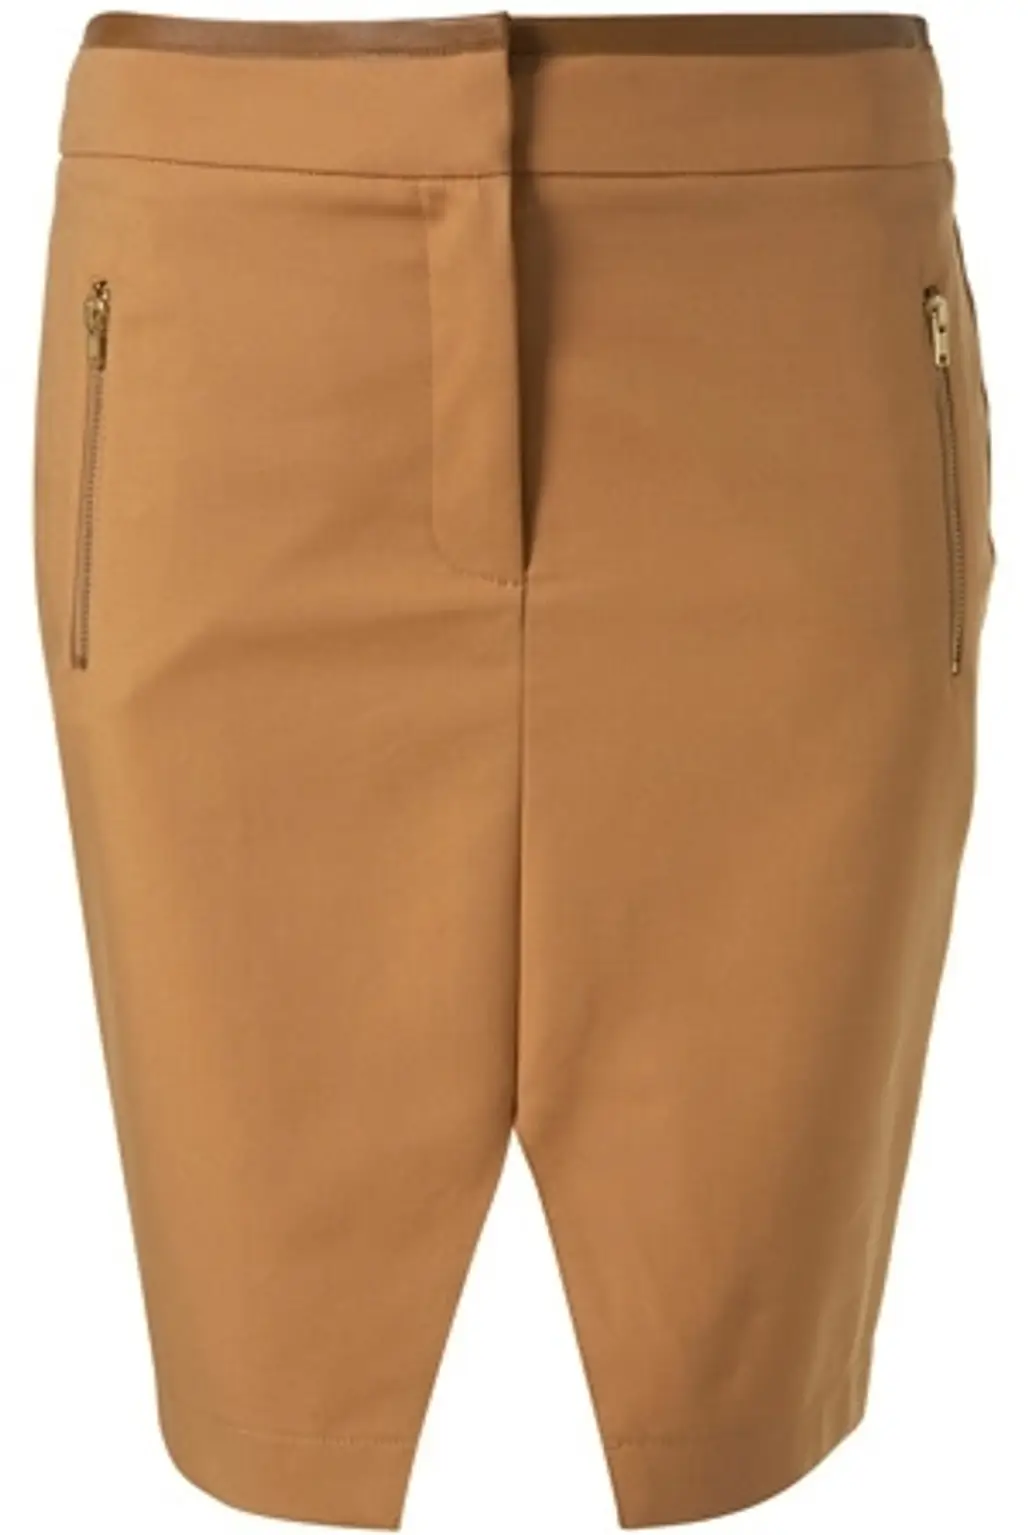 Topshop Caramel Faux Leather Trim Pencil Skirt